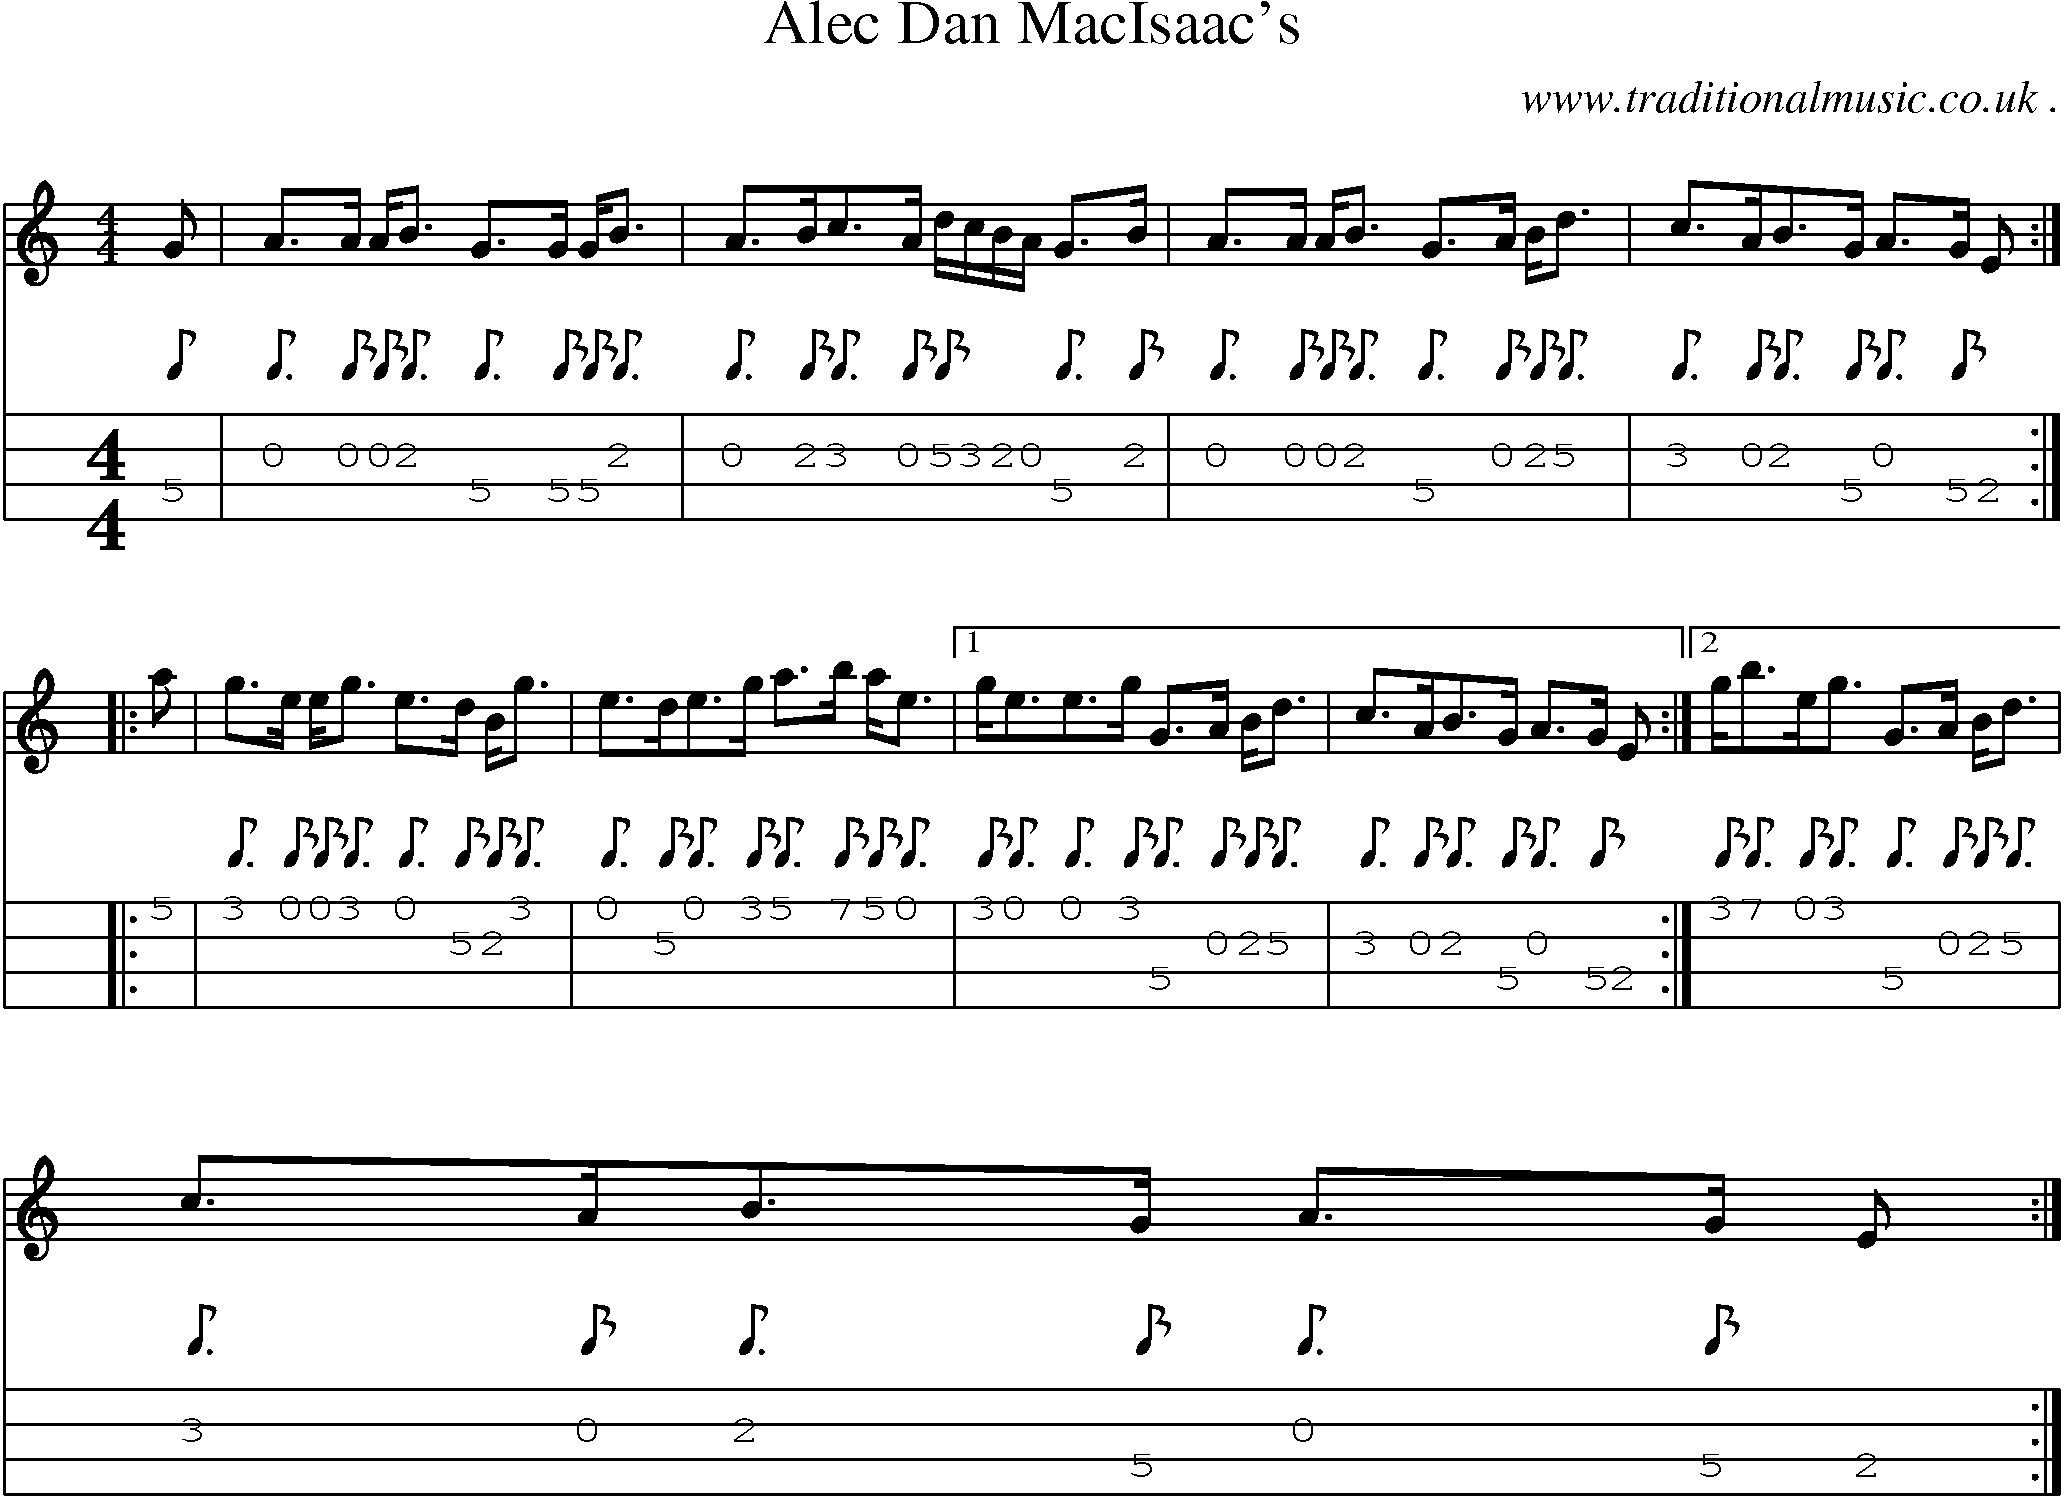 Sheet-Music and Mandolin Tabs for Alec Dan Macisaacs